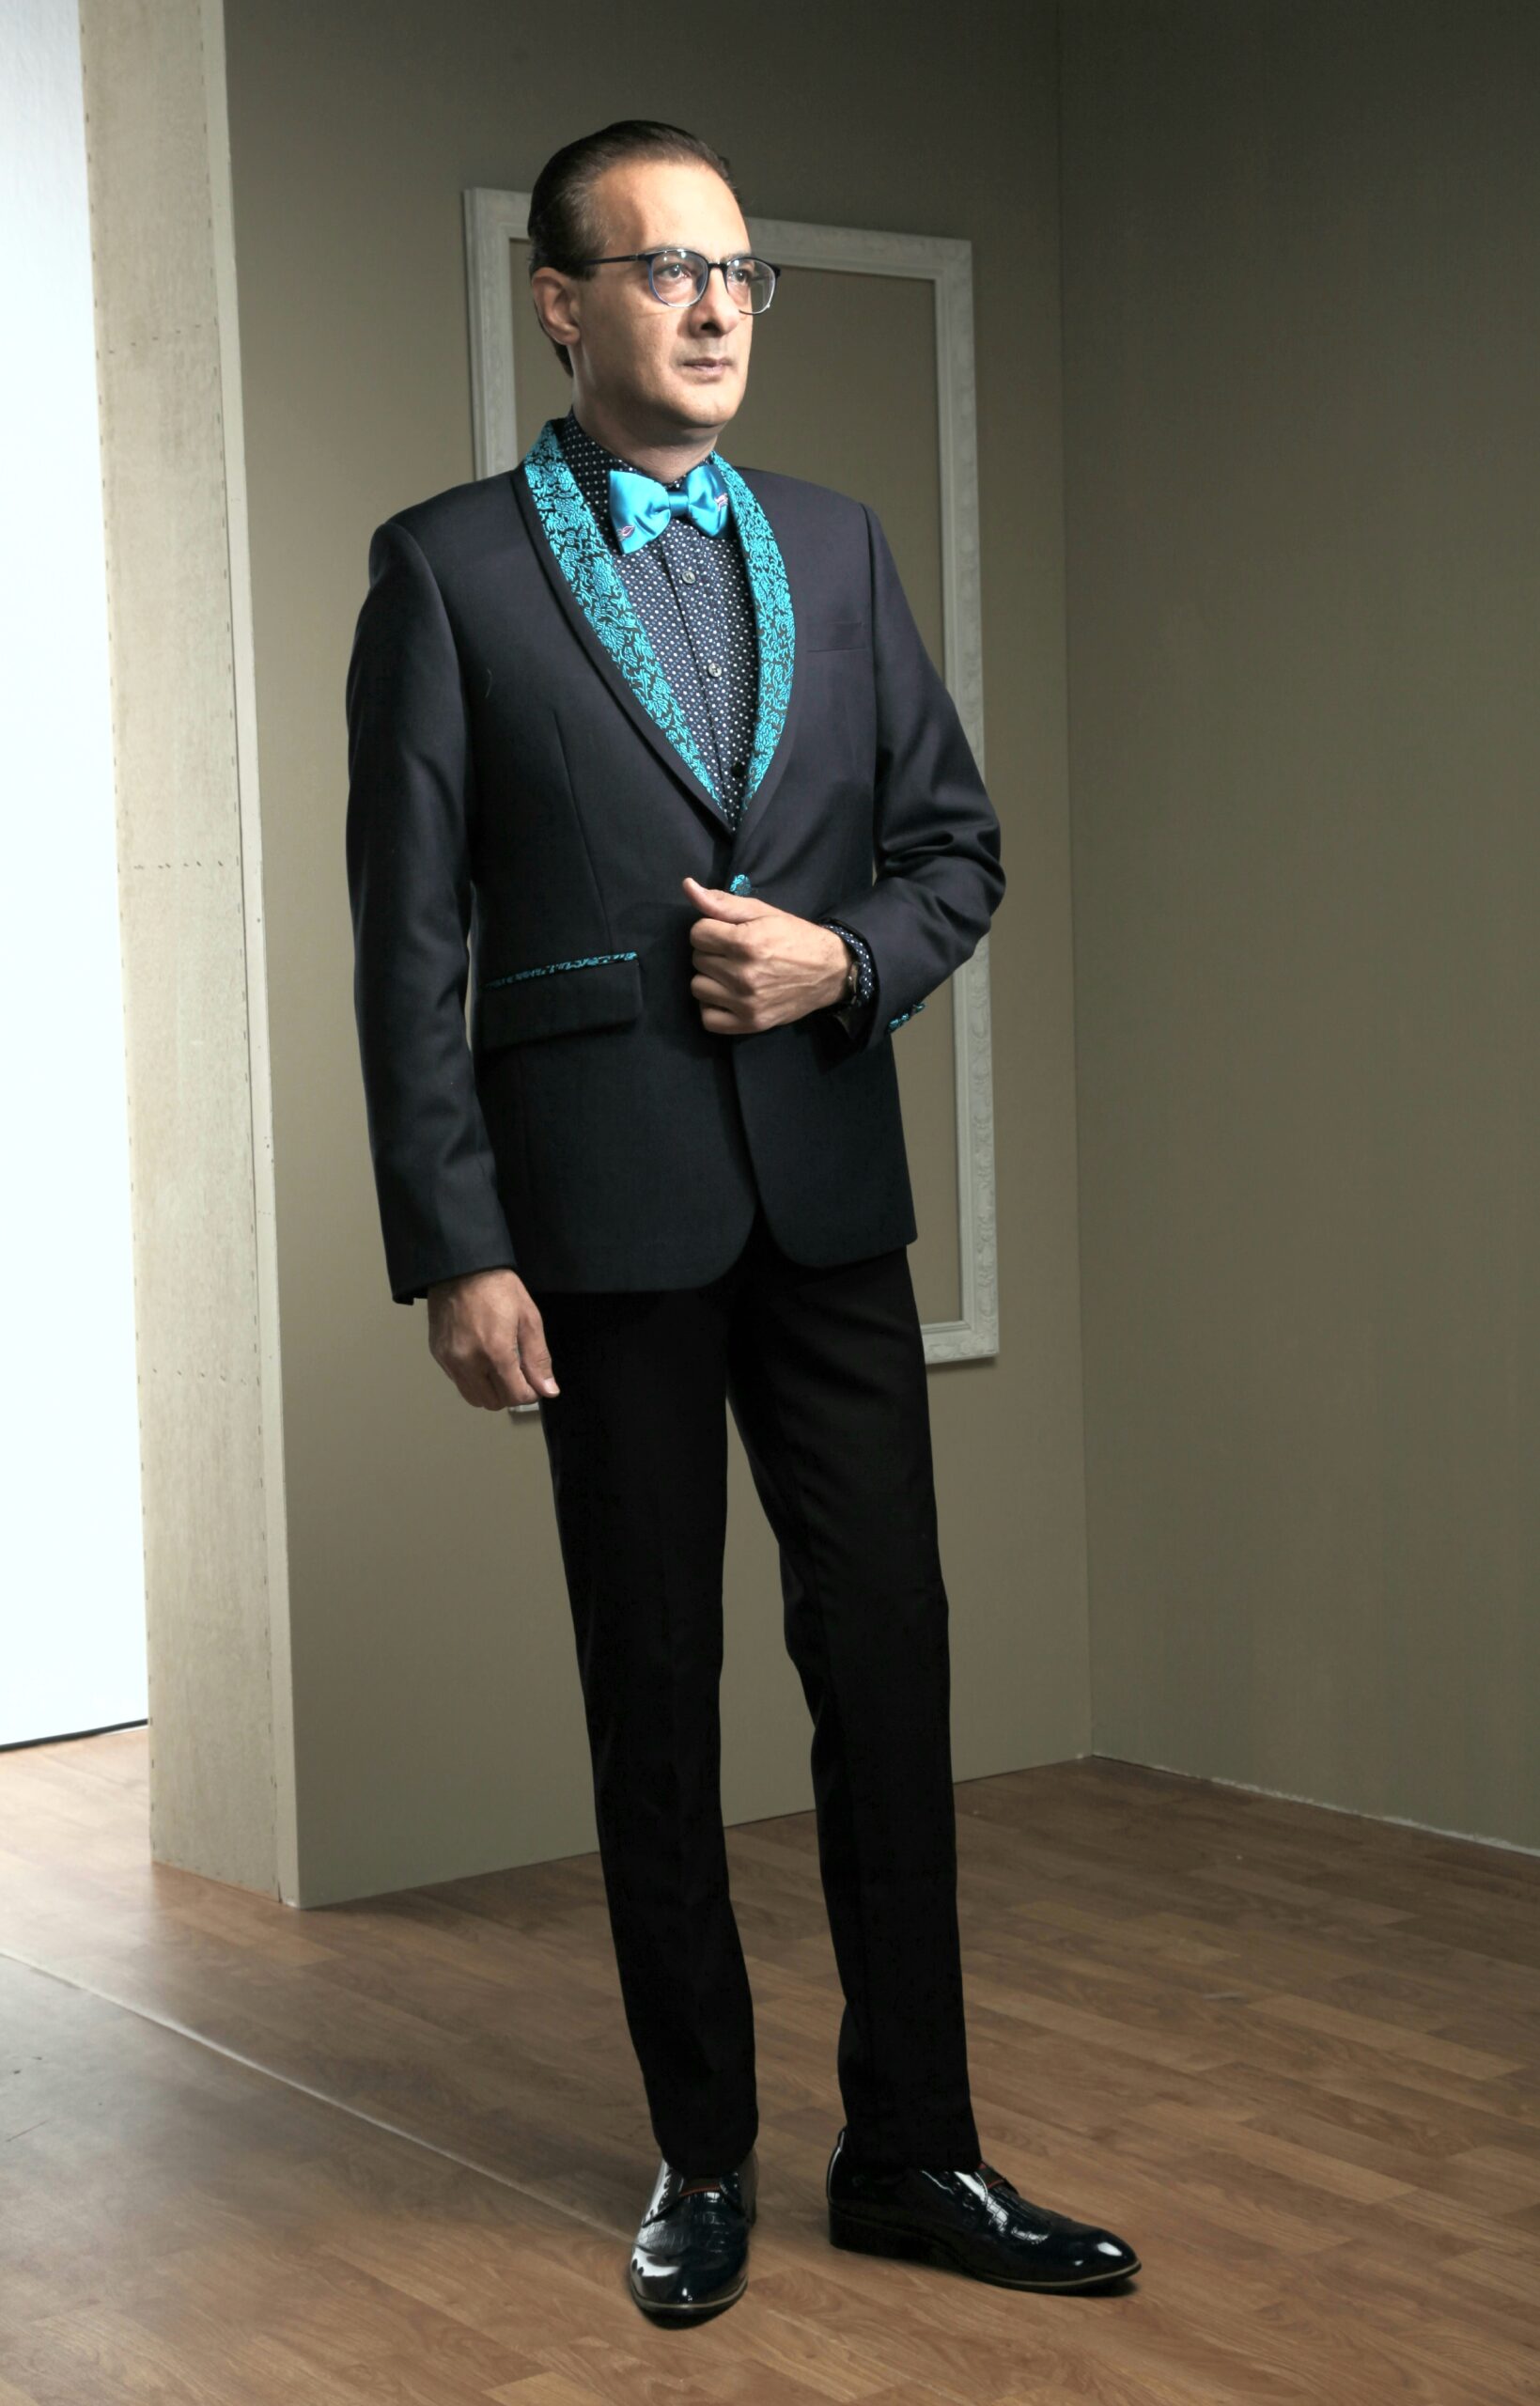 MST-5002-01-rent_rental_hire_tuxedo_suit_black_tie_suit_designer_suits_shop_tailor